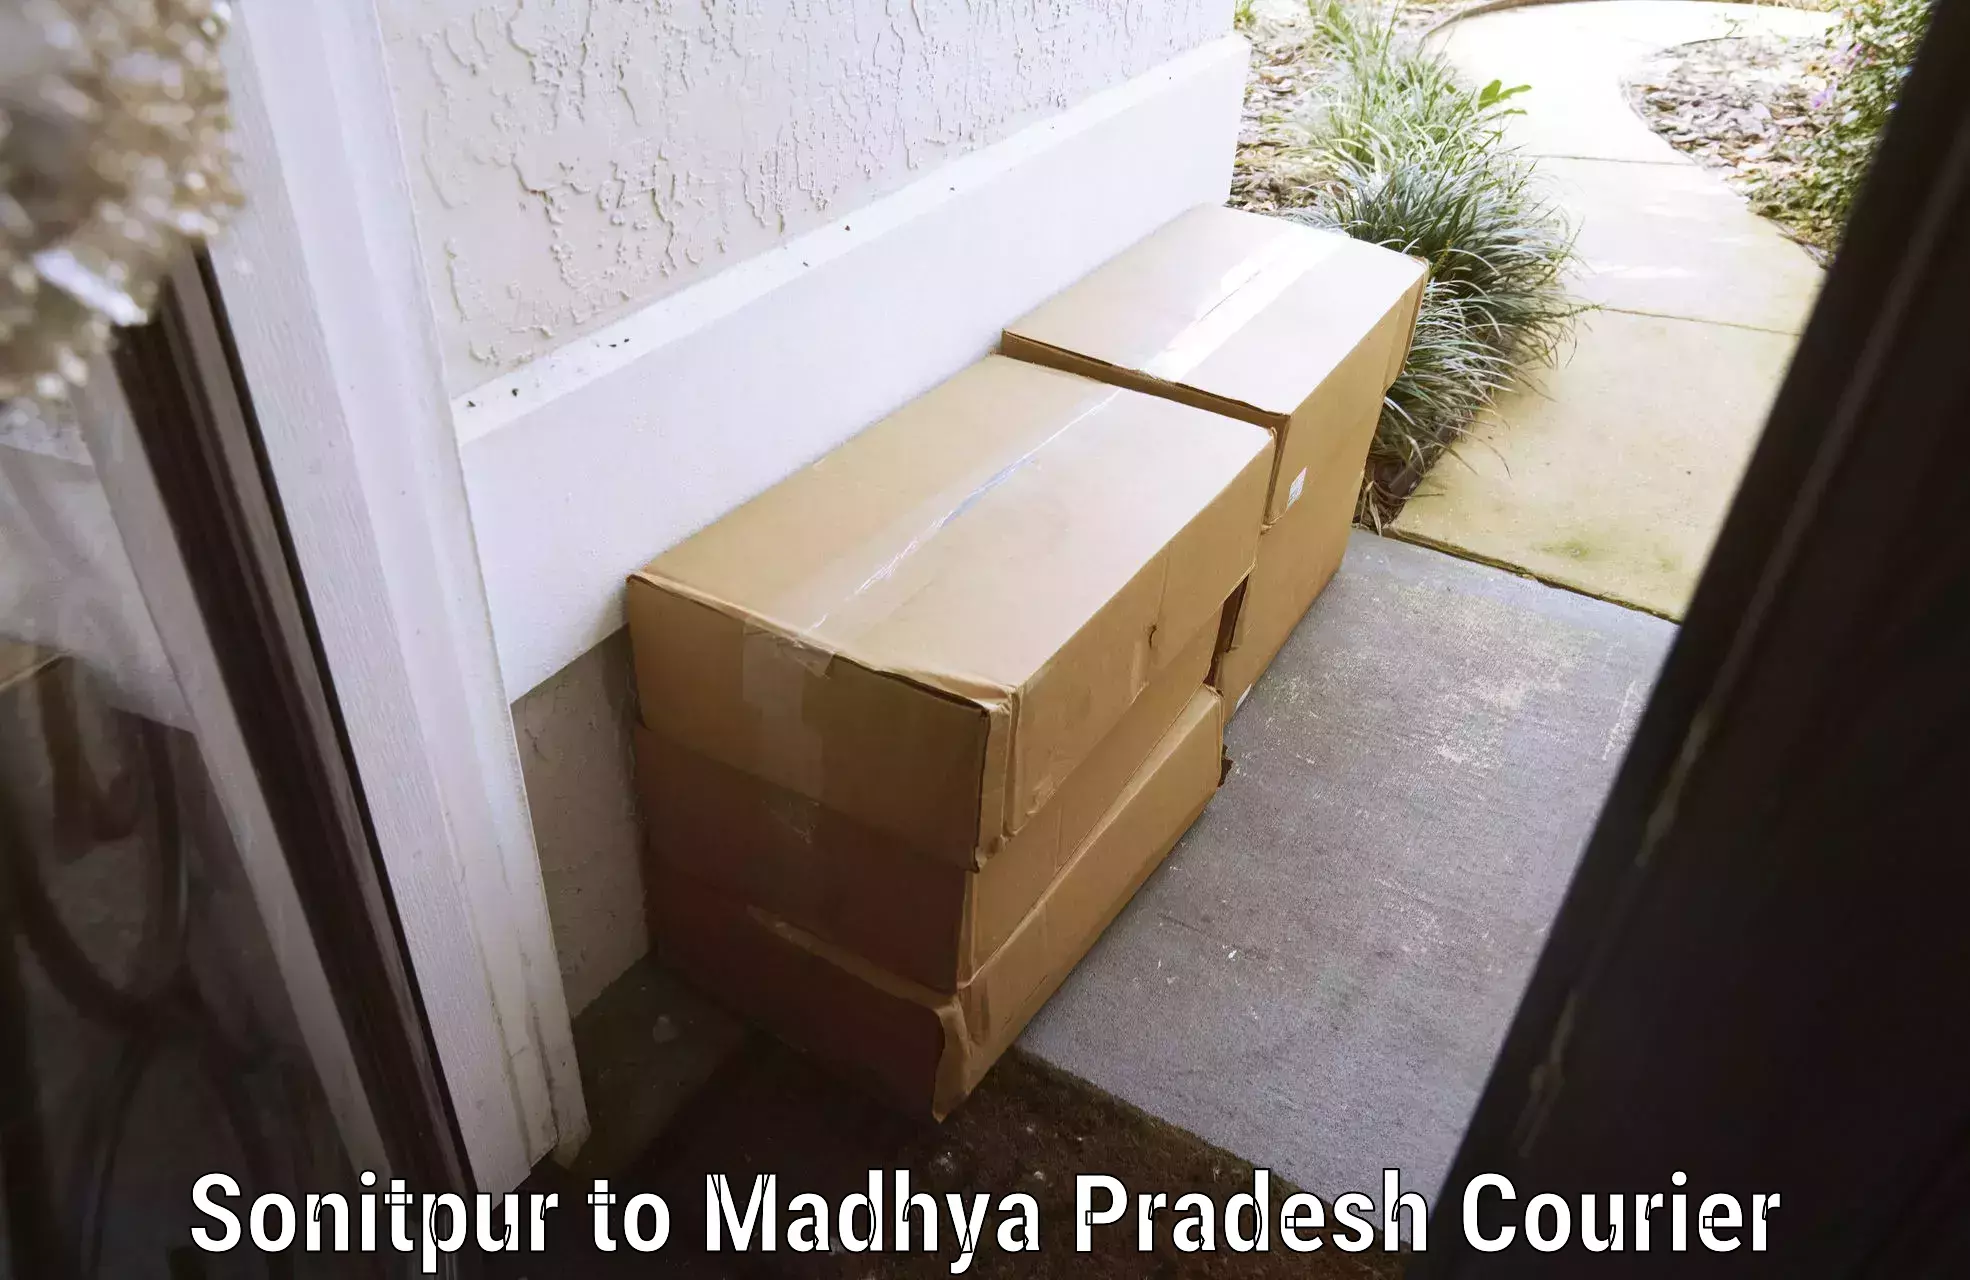 Baggage courier FAQs Sonitpur to Ghatiya